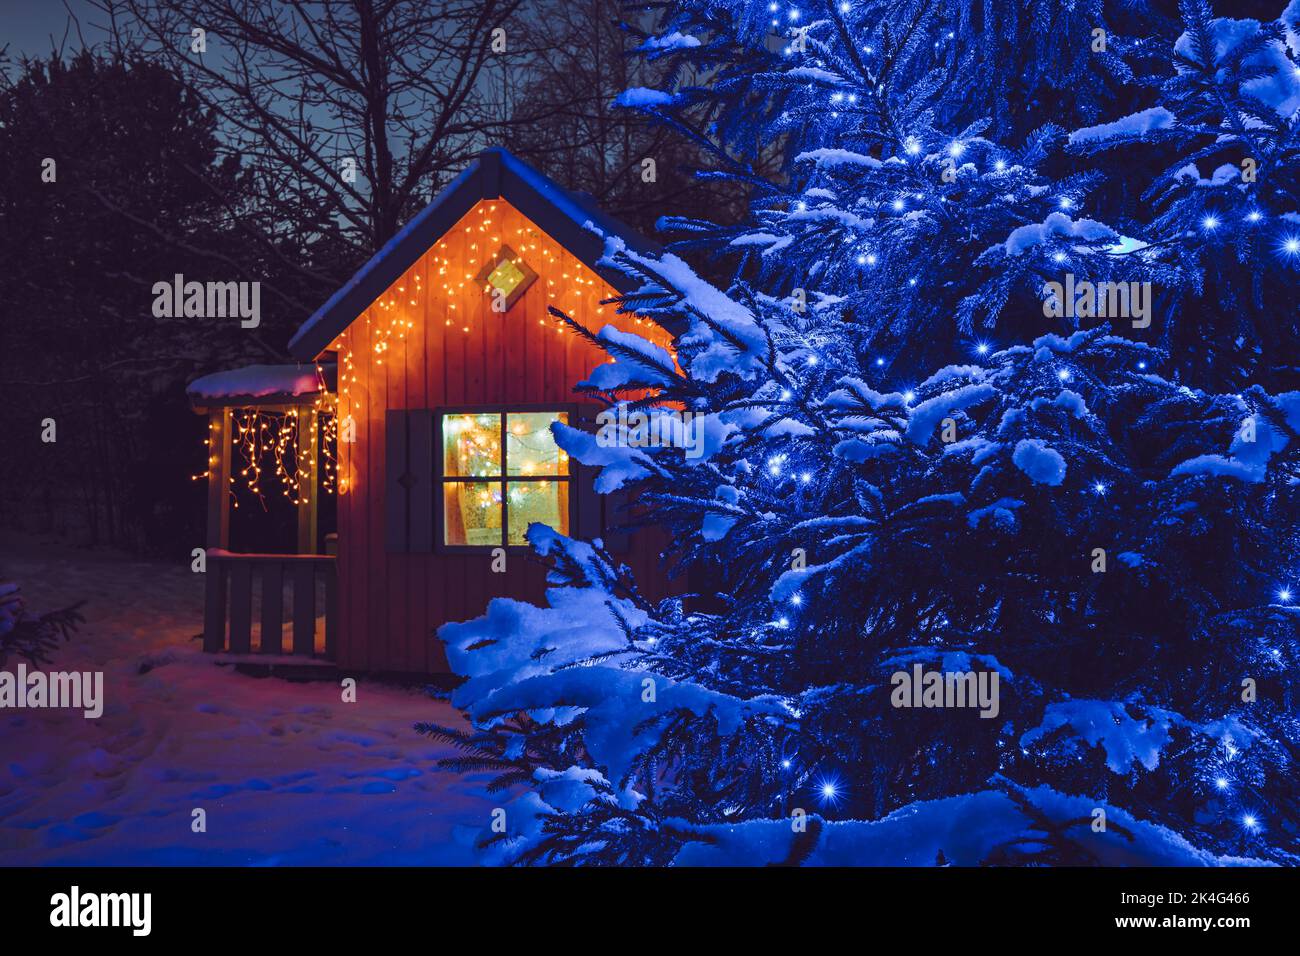 Carino gioco casa in legno giardino casa, decorato con luci a LED Natale stringa all'aperto in fredda notte di avvolgimento. Abete di Natale decorato con blu. Foto Stock